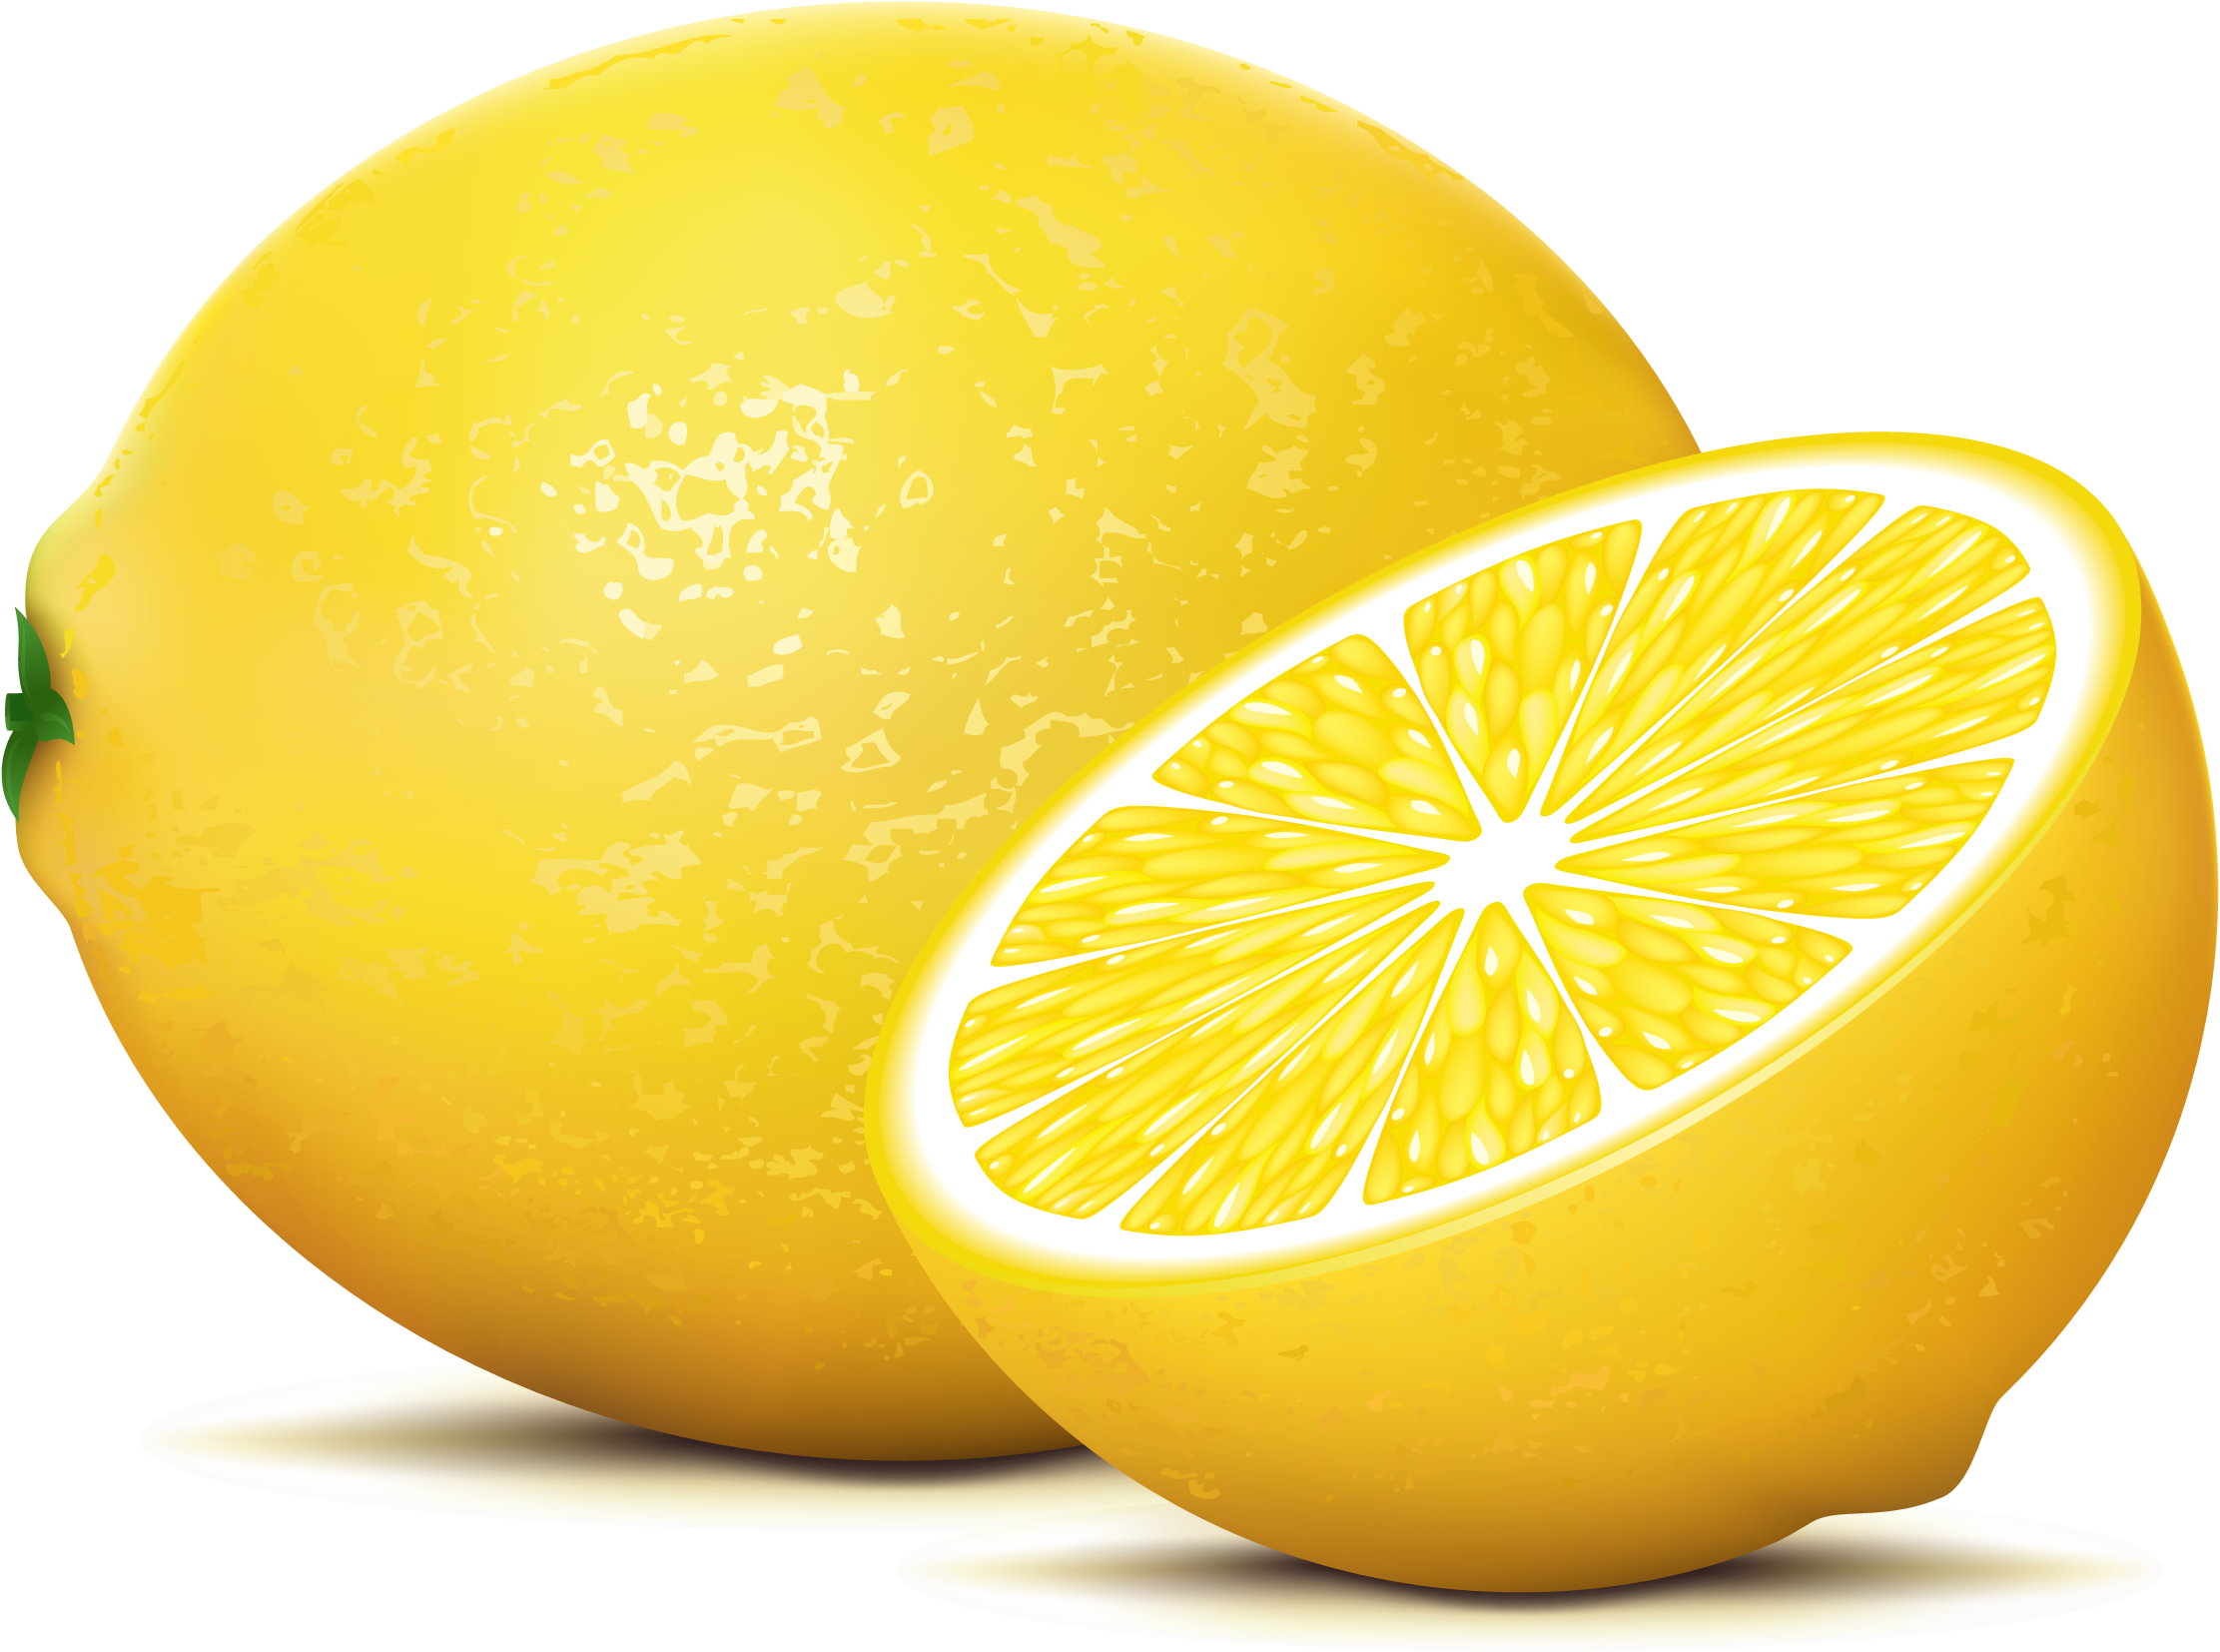 Картинка для детей лимон на прозрачном фоне. Лимон. Фрукты лимон. Лимон векторный. Лимон на прозрачном фоне.